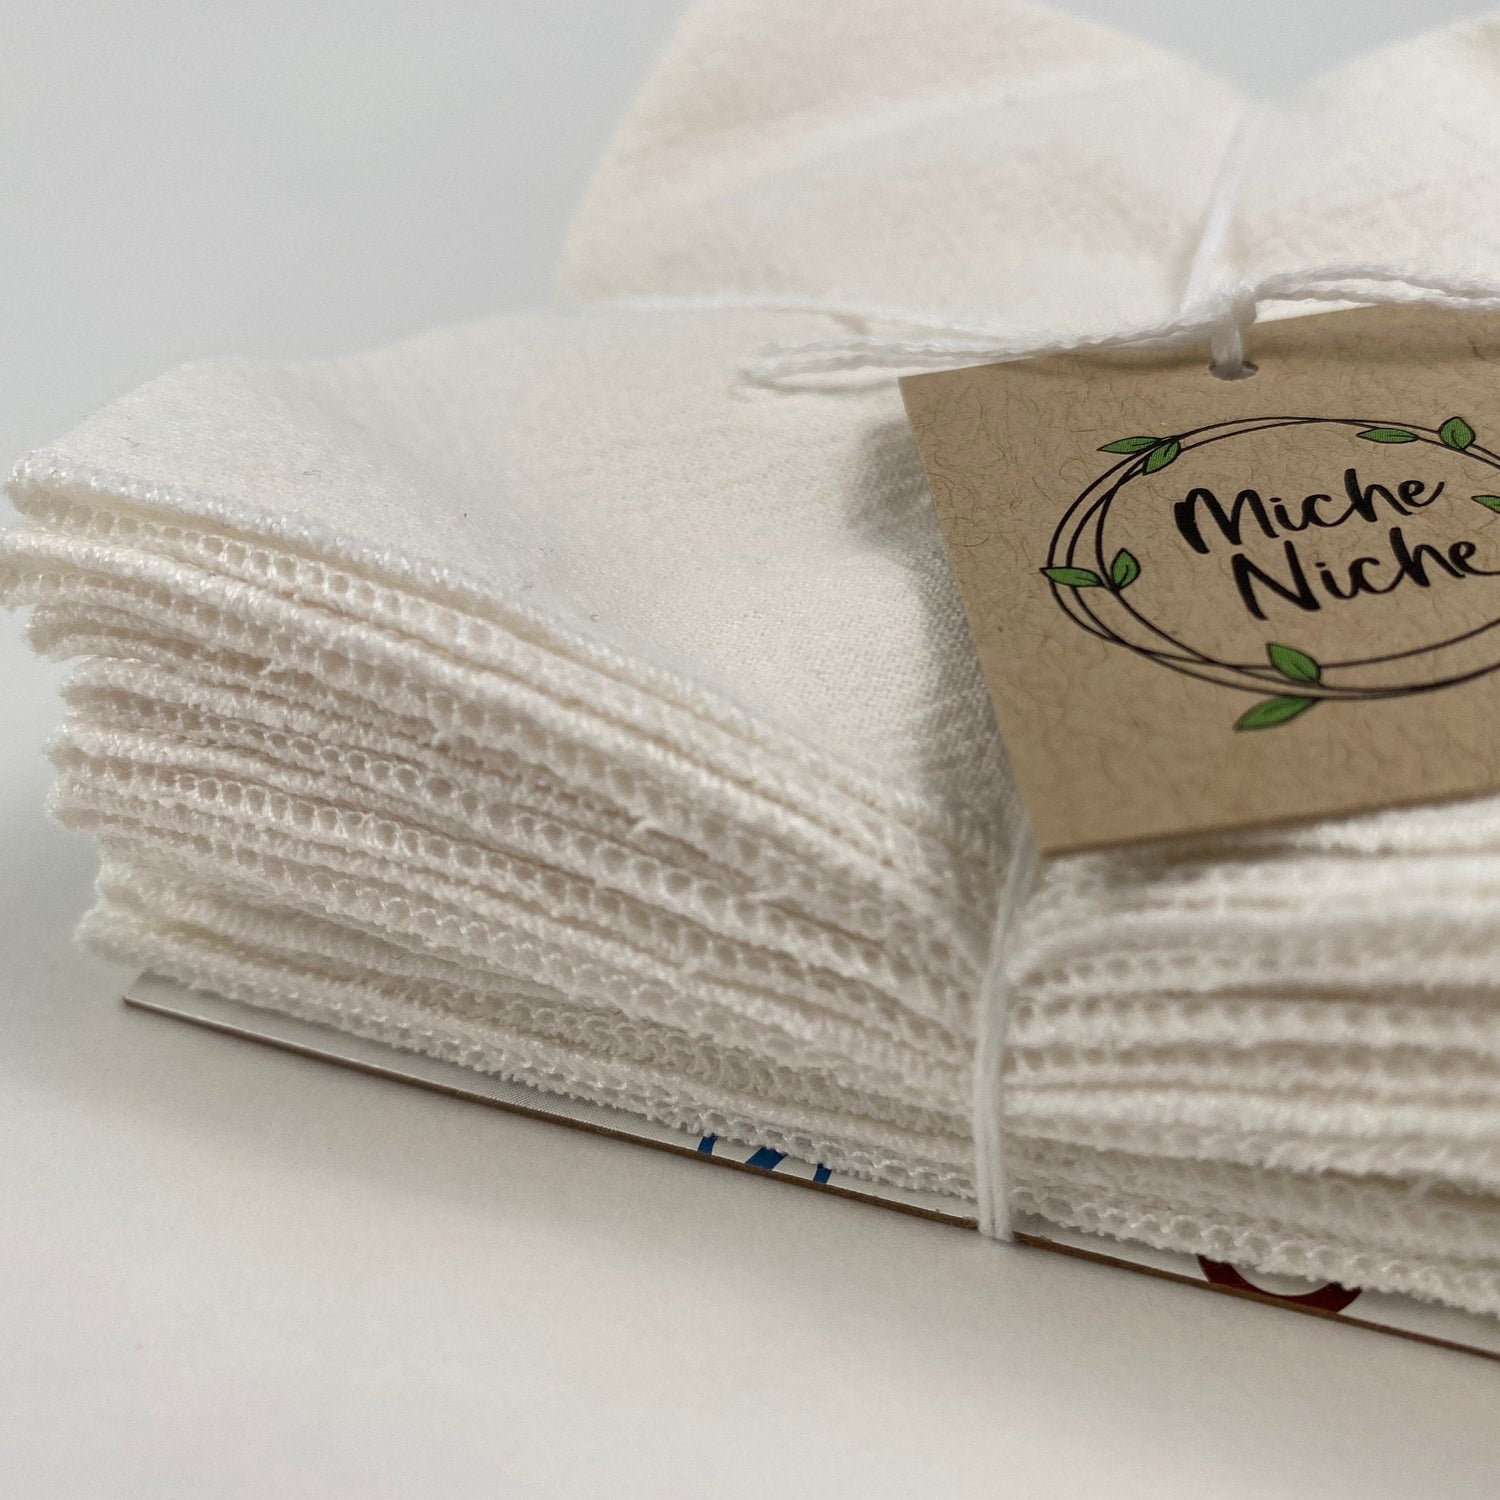 Miche Niche - Everyday Cloth Napkins